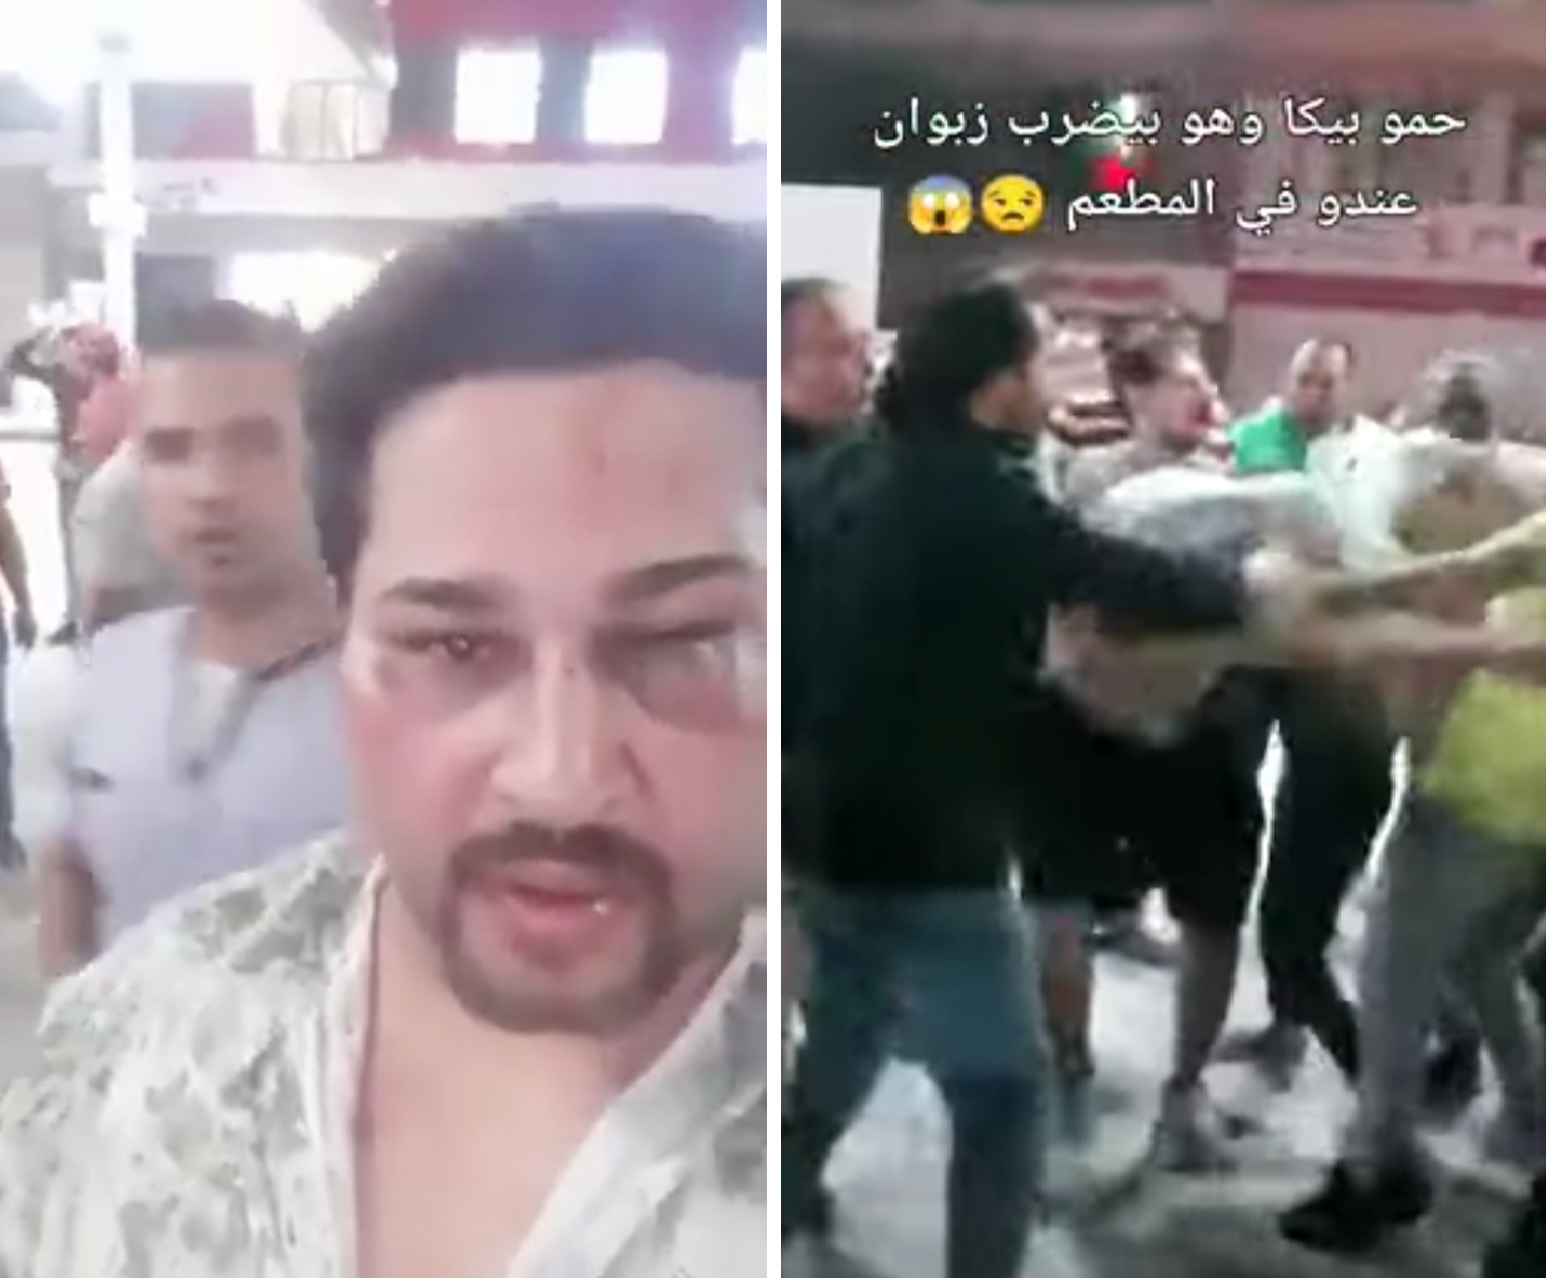 مصر.. شاهد : حمو بيكا وحرسه يعتدون بالضرب على شاب طلب التصوير معه